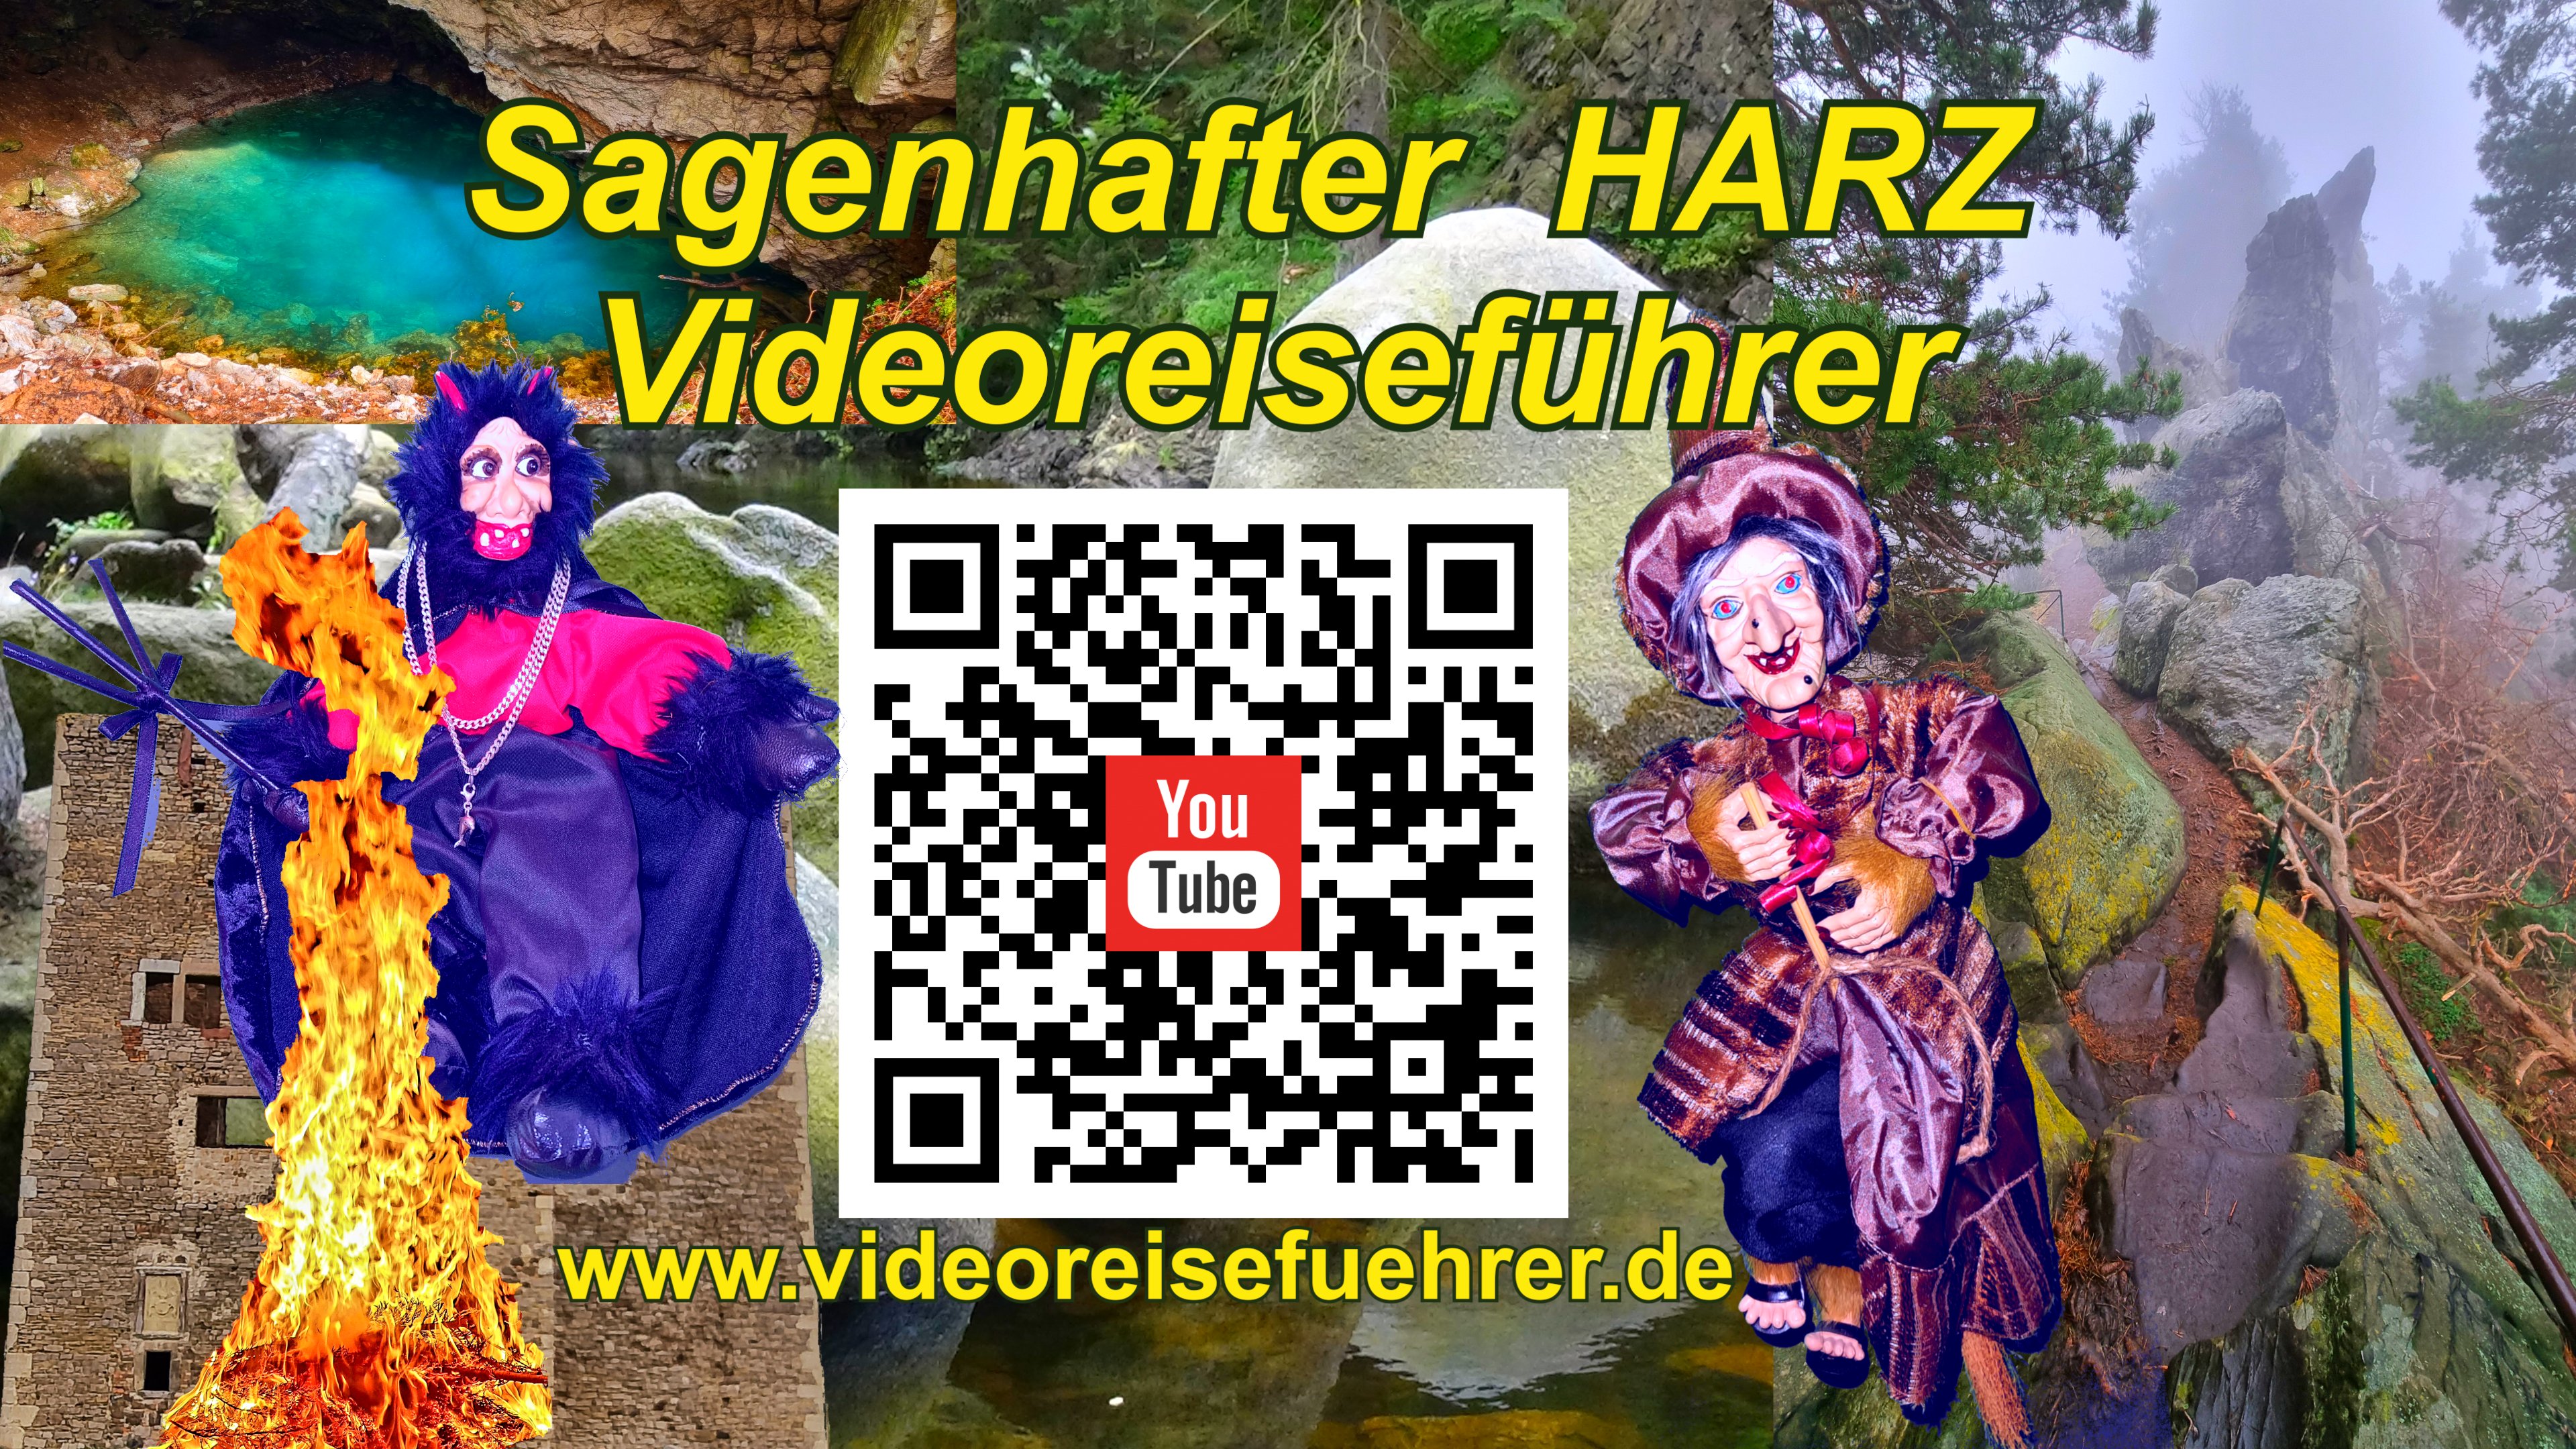 Videoreiseführer Harz - der ganze Harz auf dem Smartphone von Ulf Zaspel - Immobilien